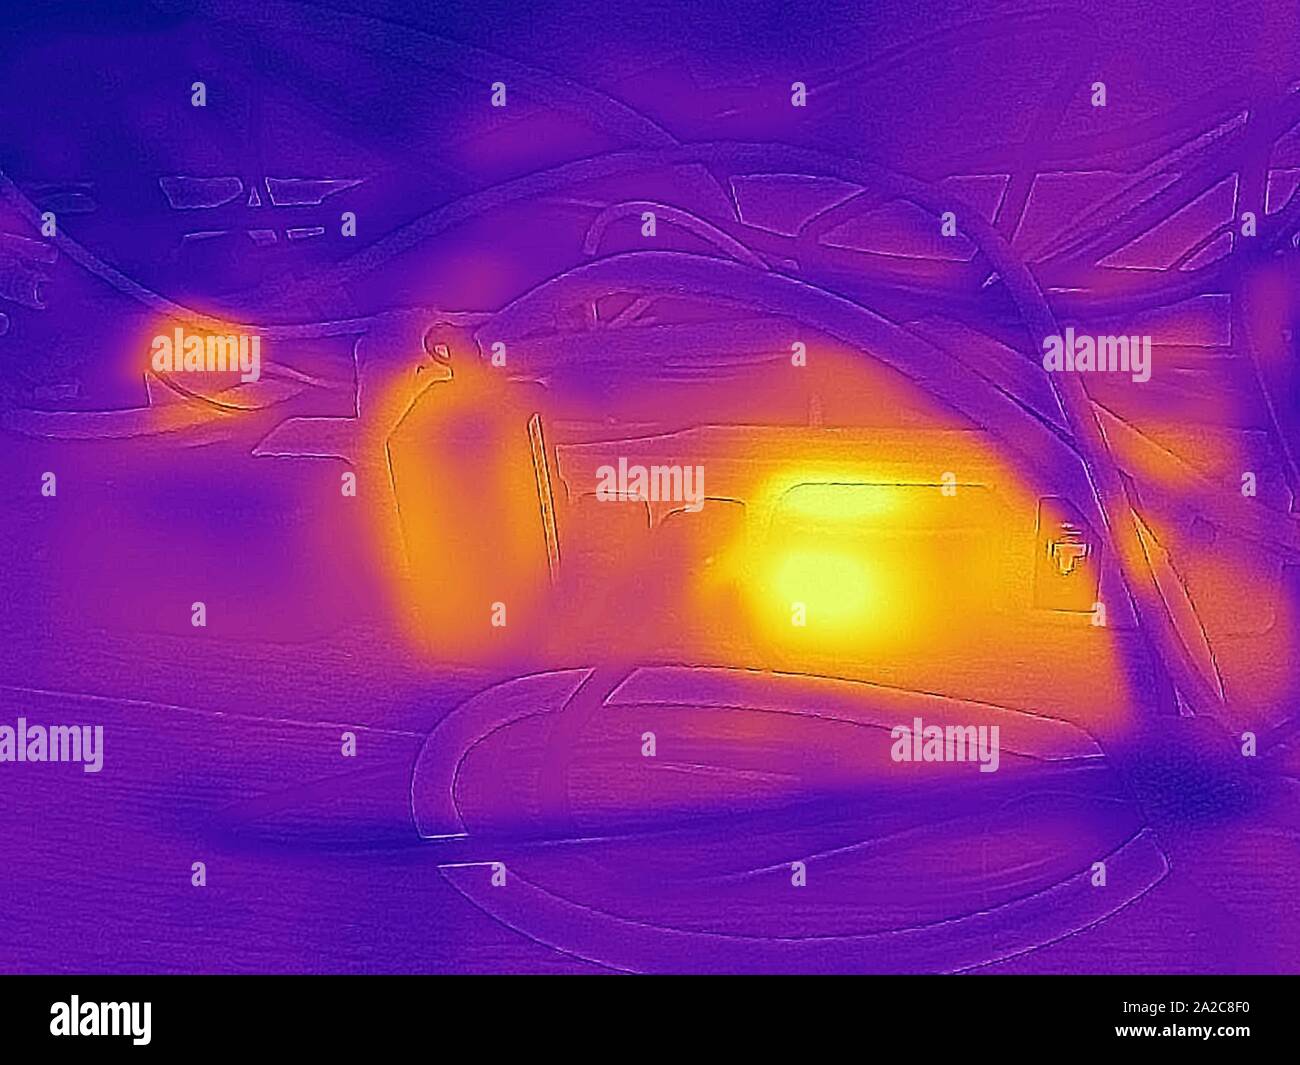 Wärmebild der Wärmebildkamera mit Lichtbereichen, die höheren Temperaturen entsprechen und Abwärme von Netzteilen zeigen, die an eine Steckerleiste angeschlossen sind, ein Beispiel für Phantomlast oder Standby-Leistungsabfall, das im September 2019 als Vampirleistung oder Geisterlast bezeichnet wird, San Ramon, Kalifornien. () Stockfoto